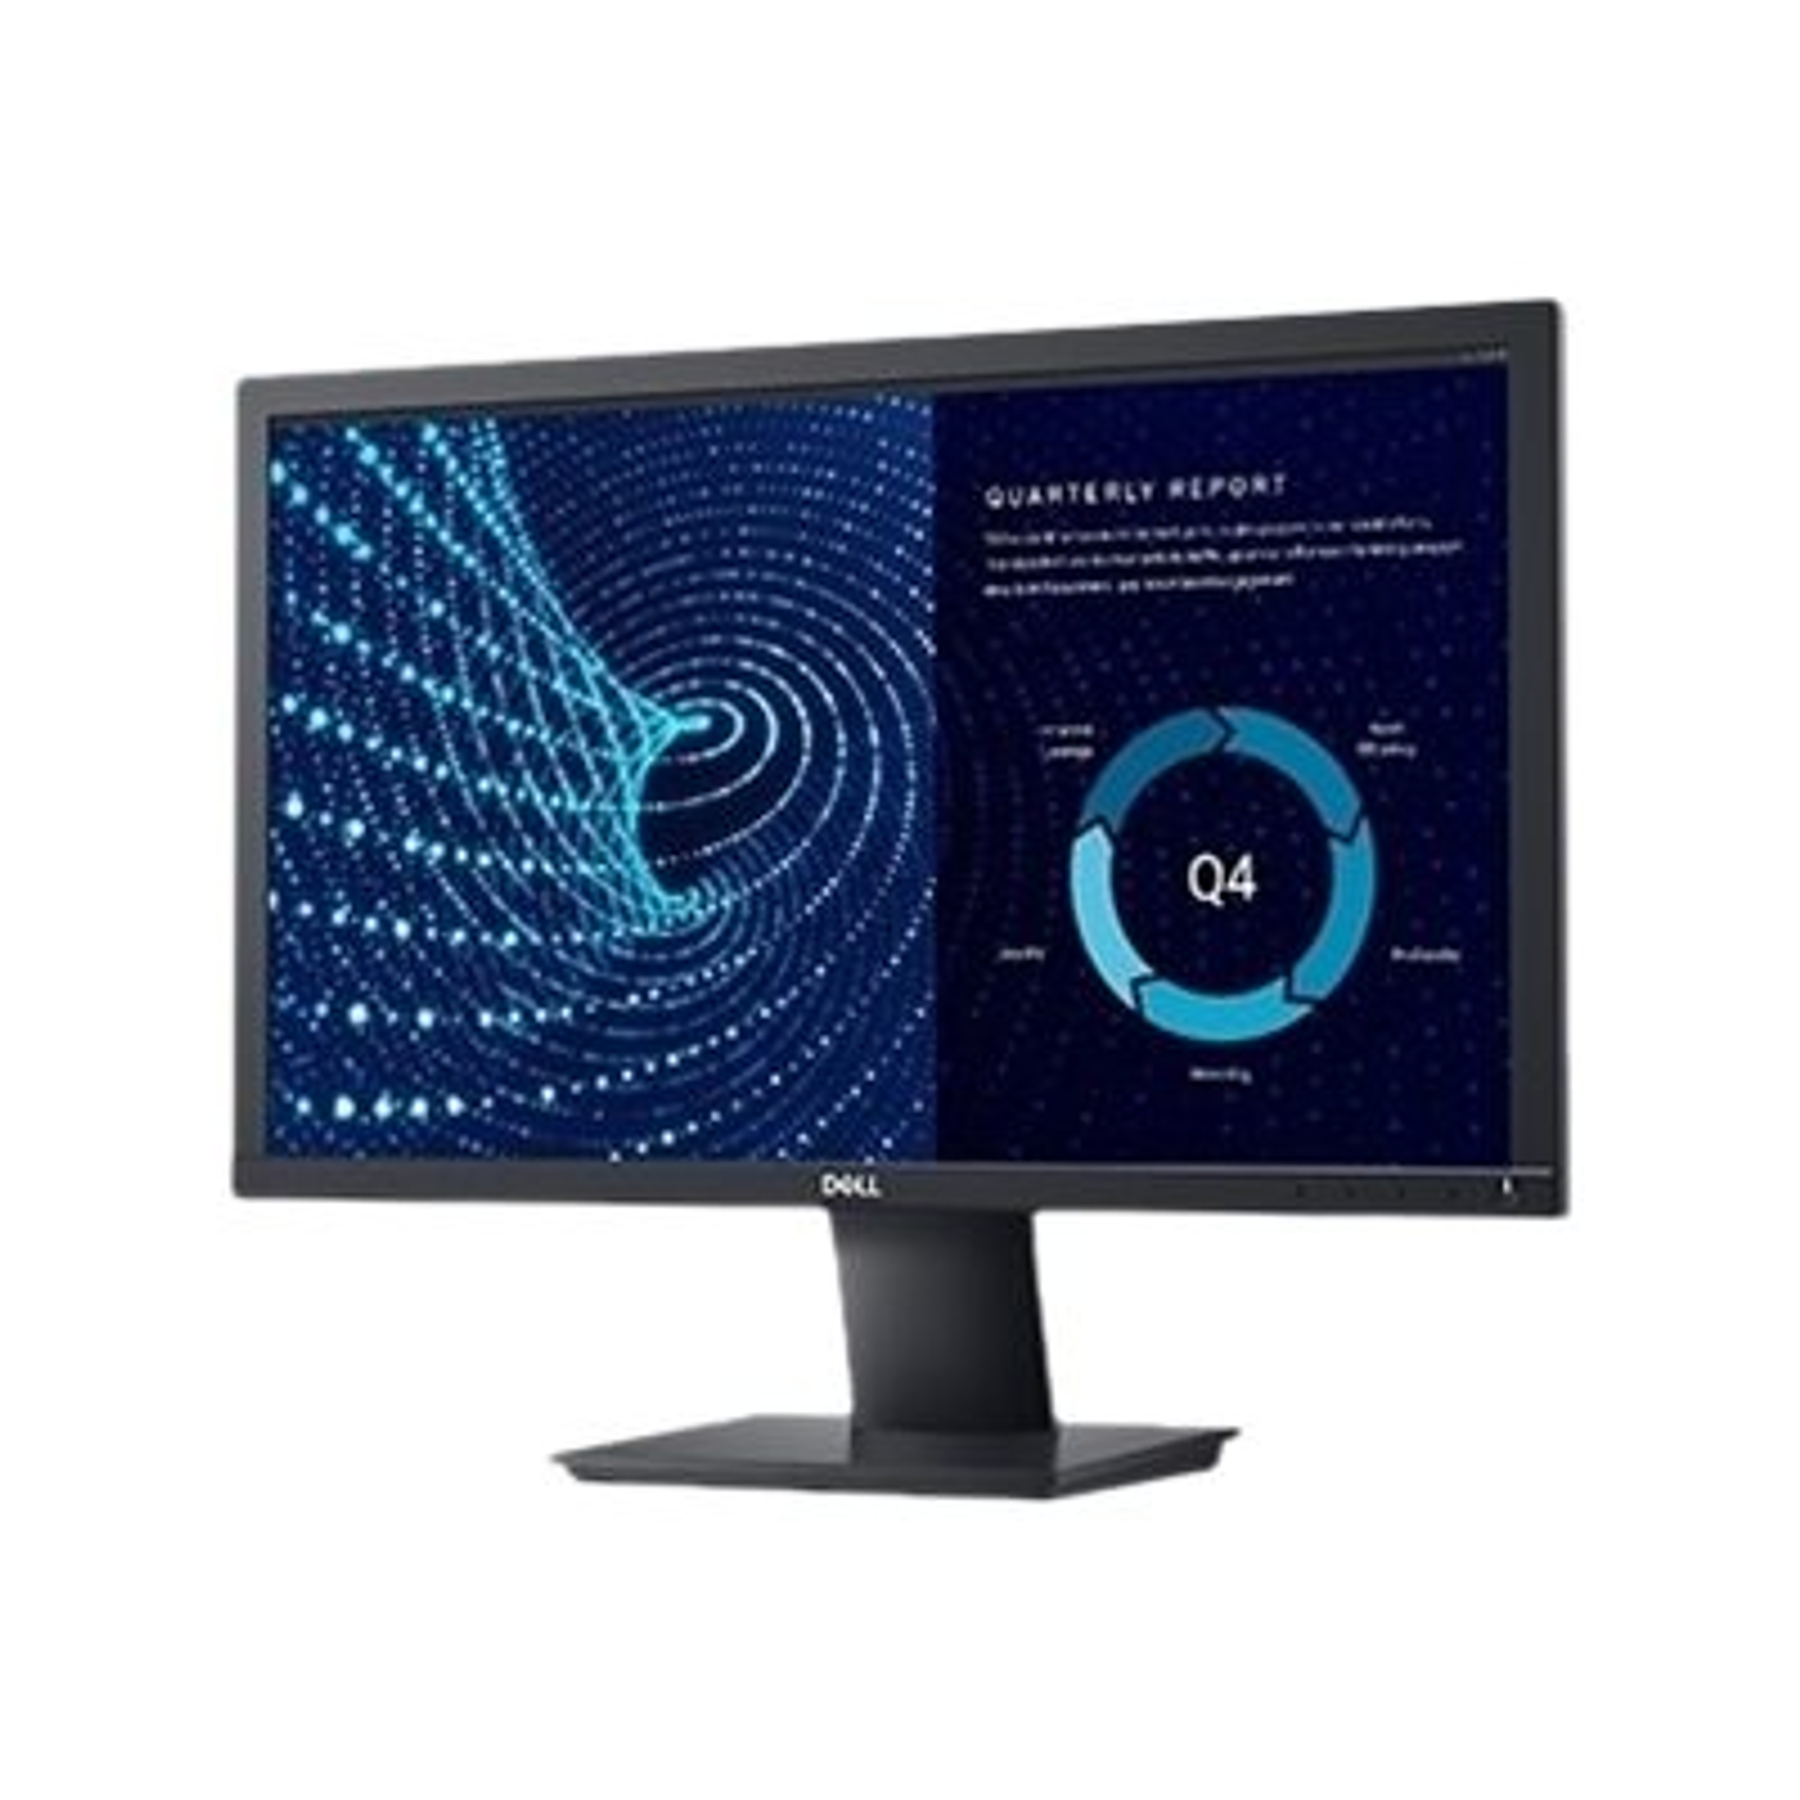 Dell Monitor E2221HN 21.5